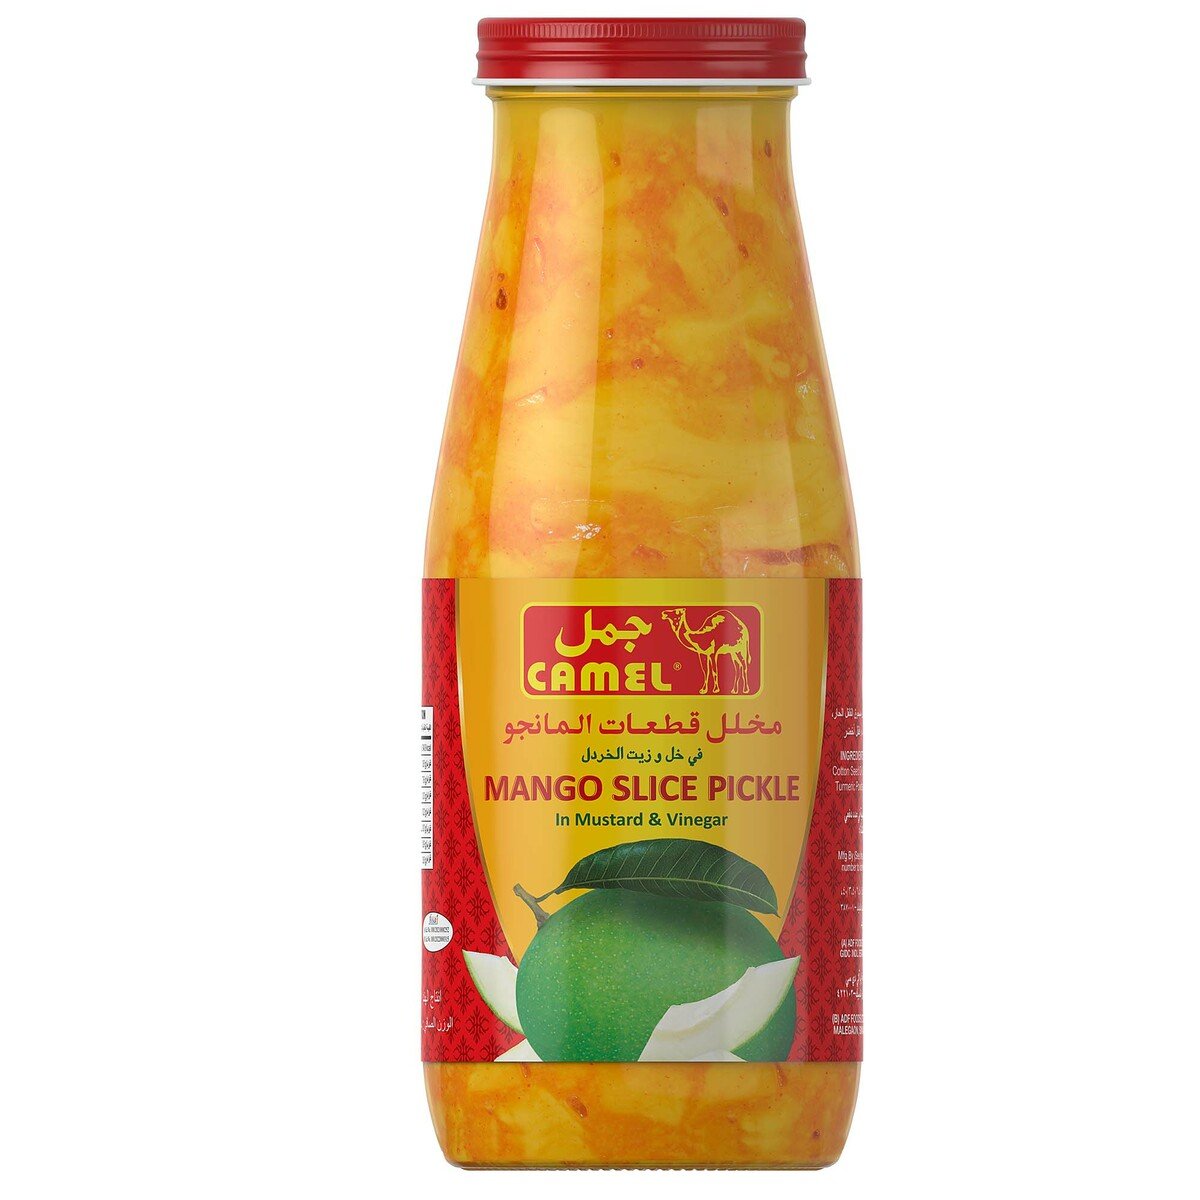 Camel Mango Slice Pickle 400 g